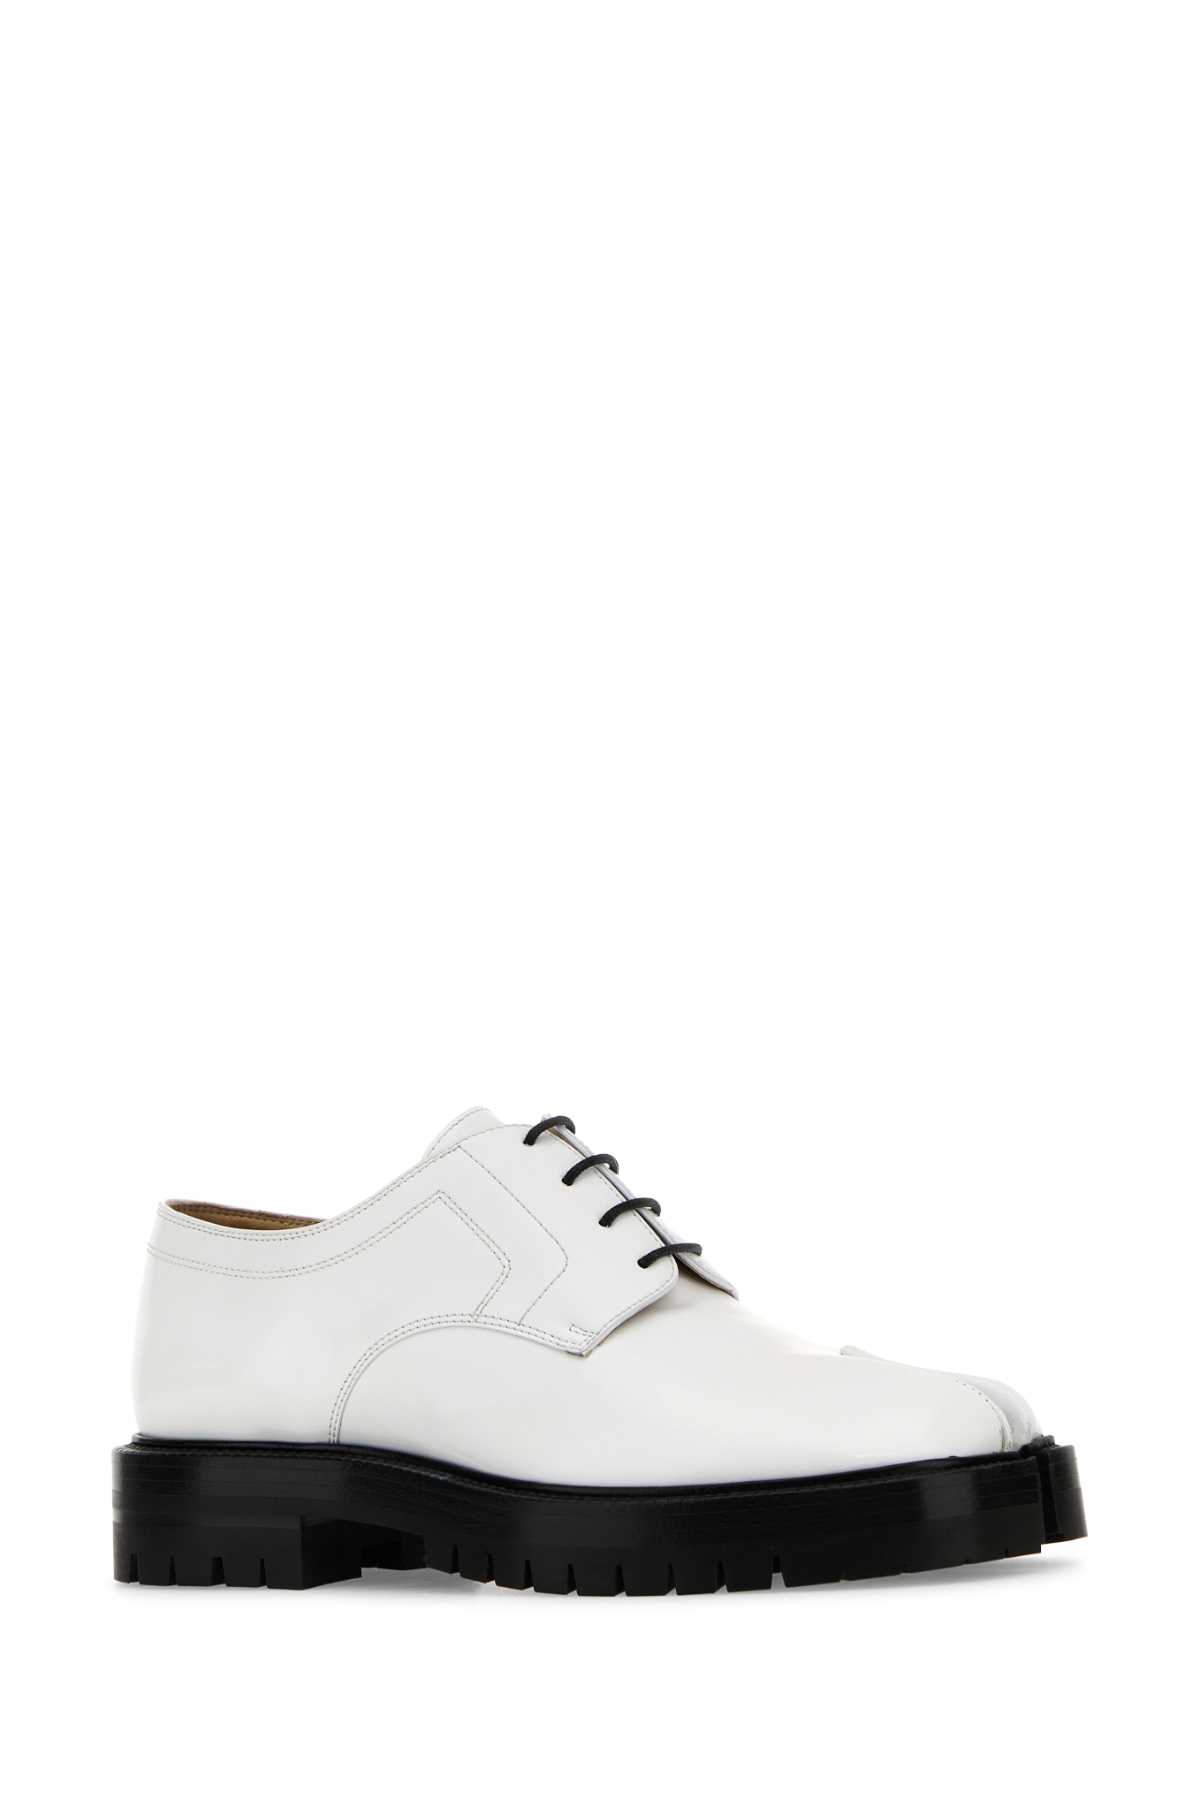 Maison Margiela White Leather Tabi Lace-up Shoes In Whiteblack